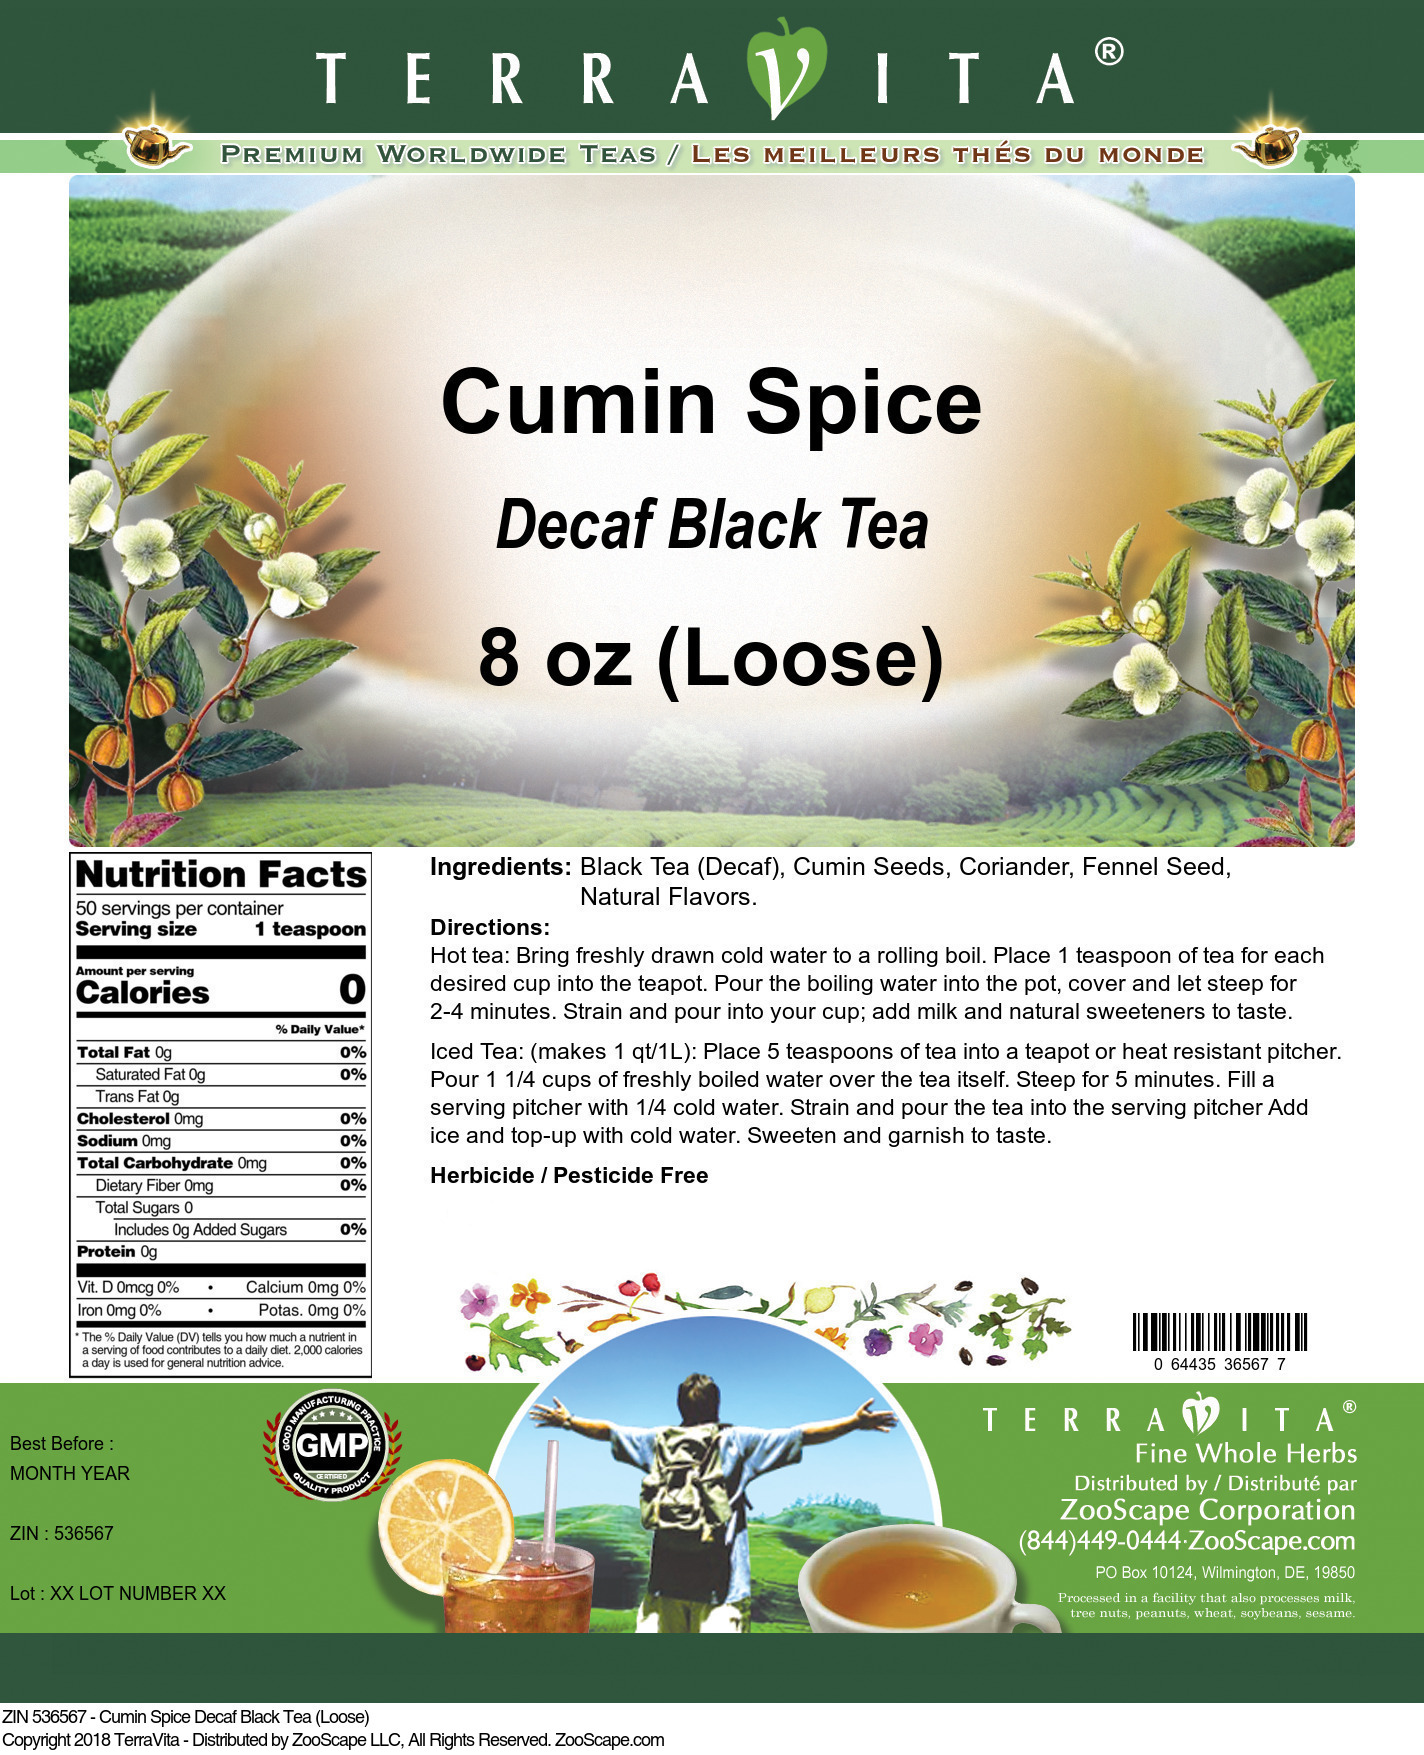 Cumin Spice Decaf Black Tea (Loose) - Label